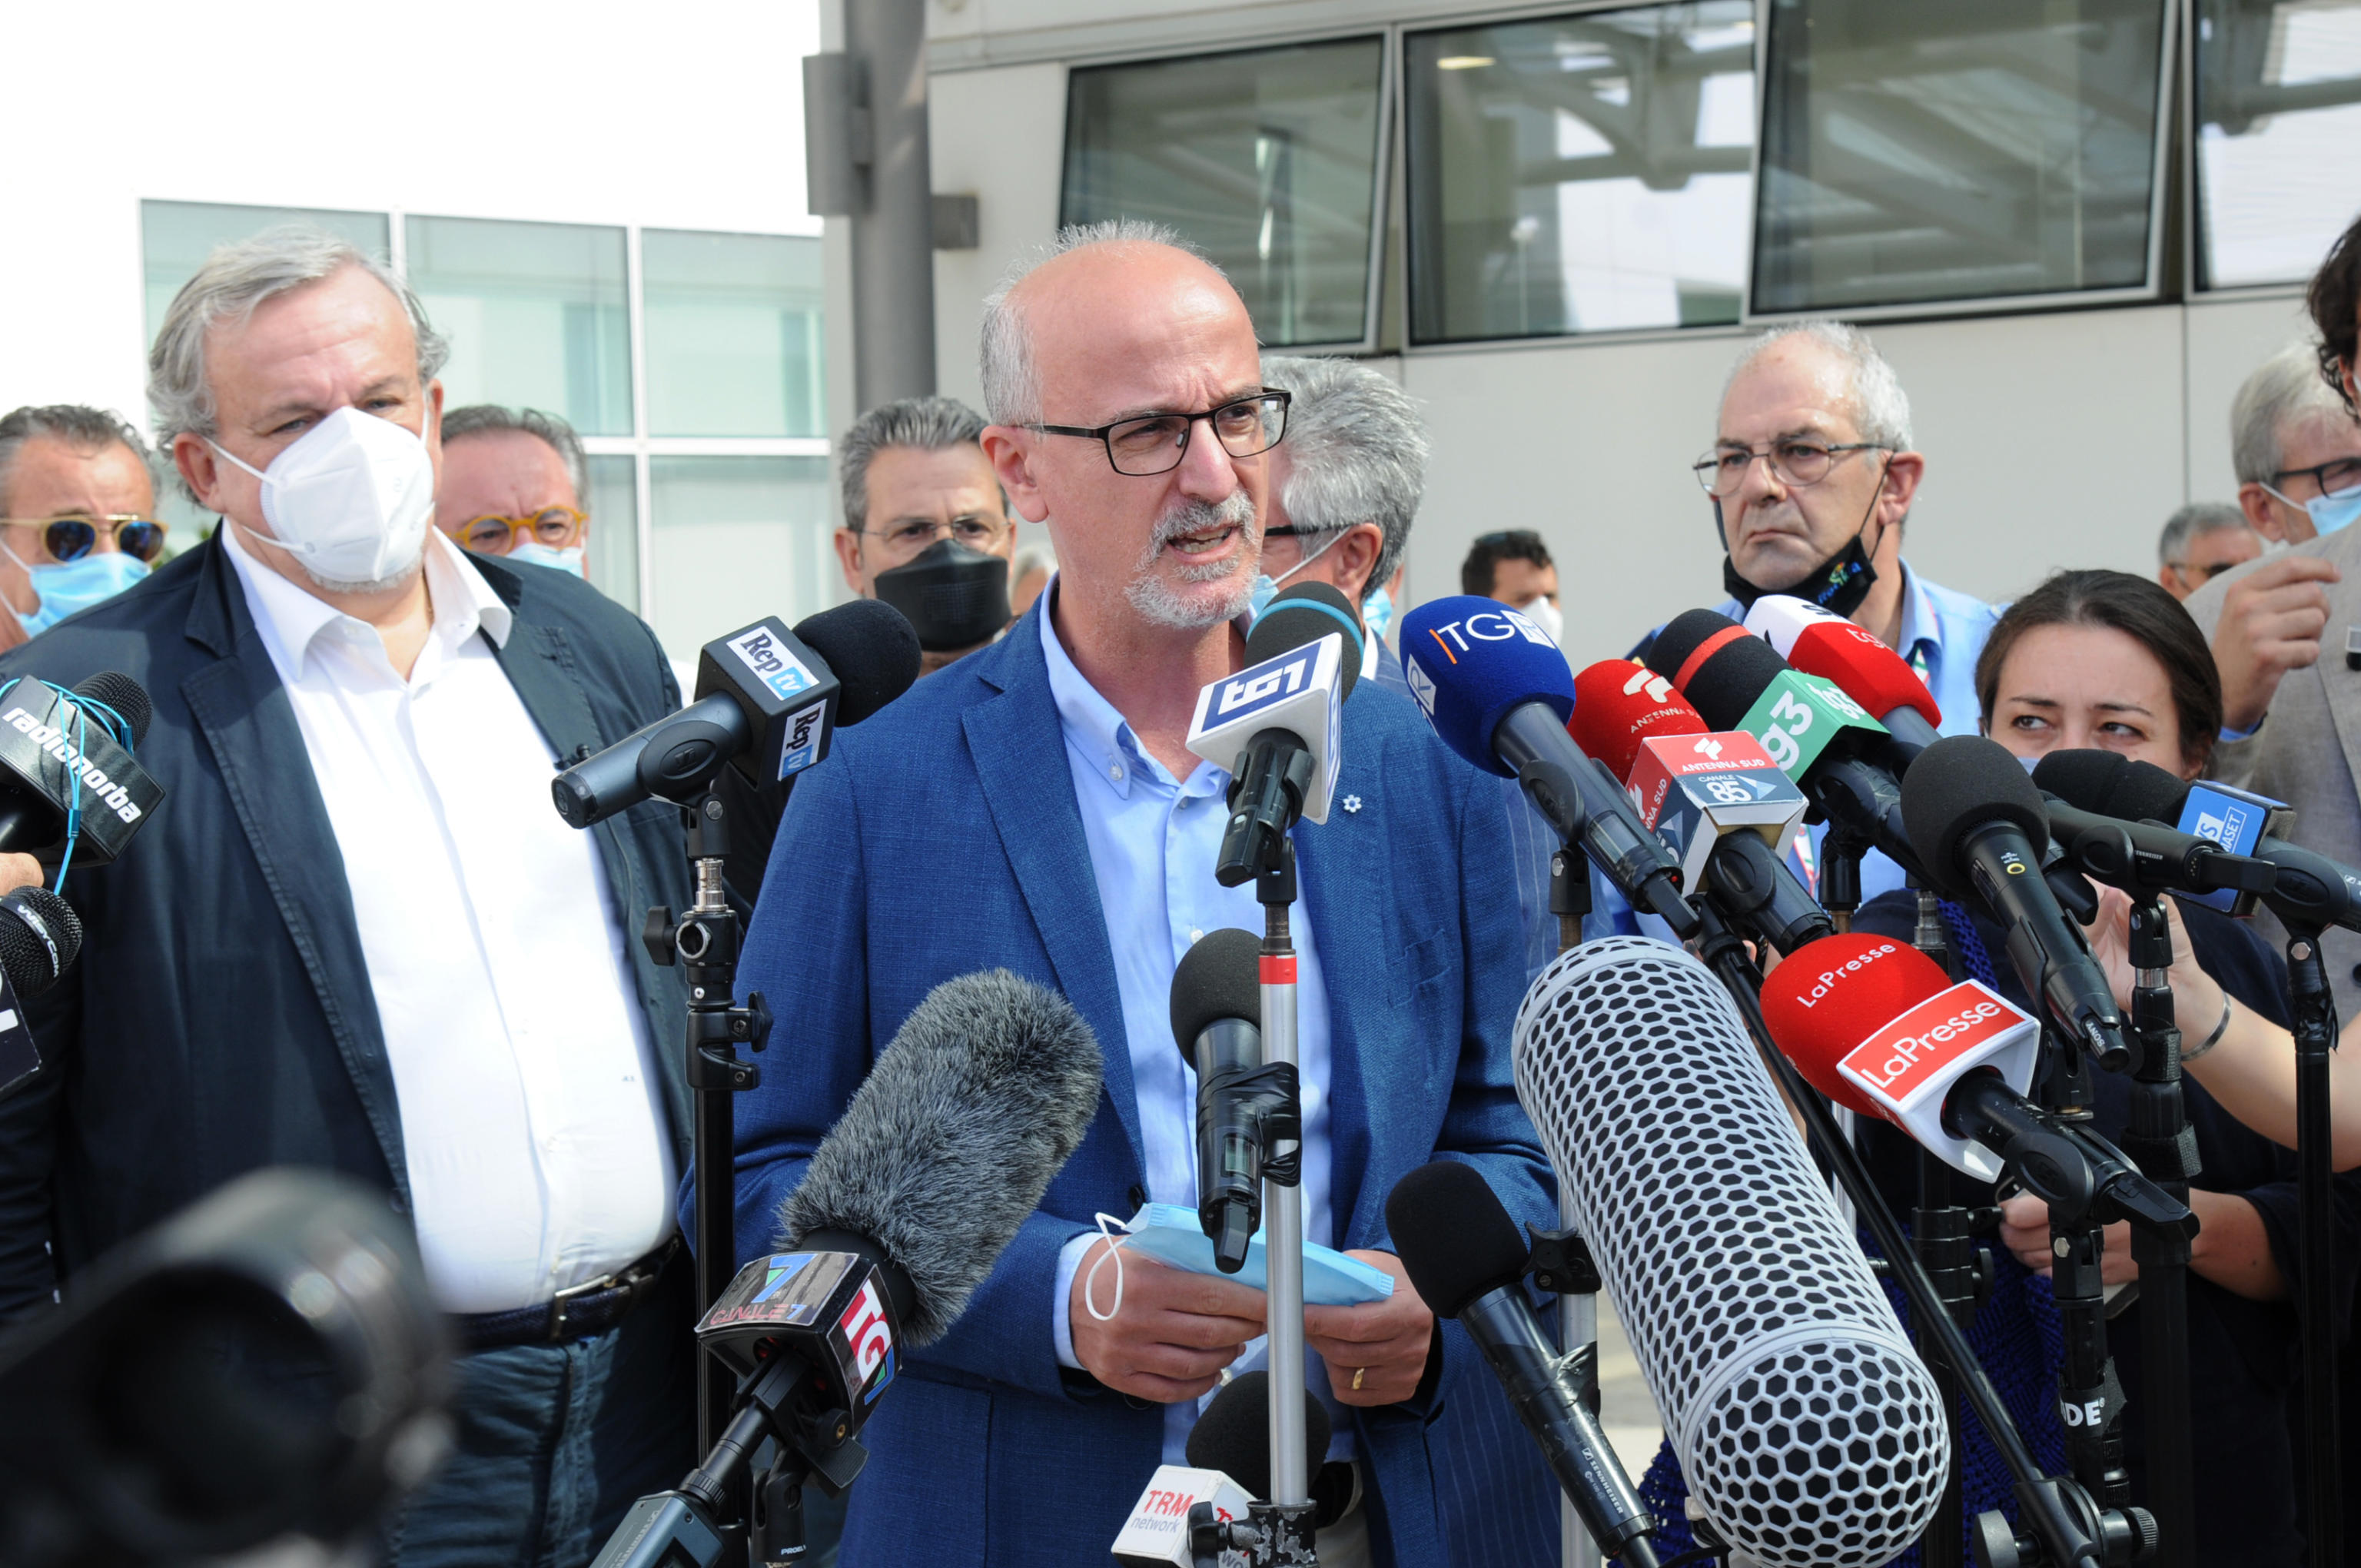 Puglia, Lopalco escluso dalle candidature del Pd. La protesta di Articolo 1: «Le nostre candidature ignorate. Arroganza senza limiti»